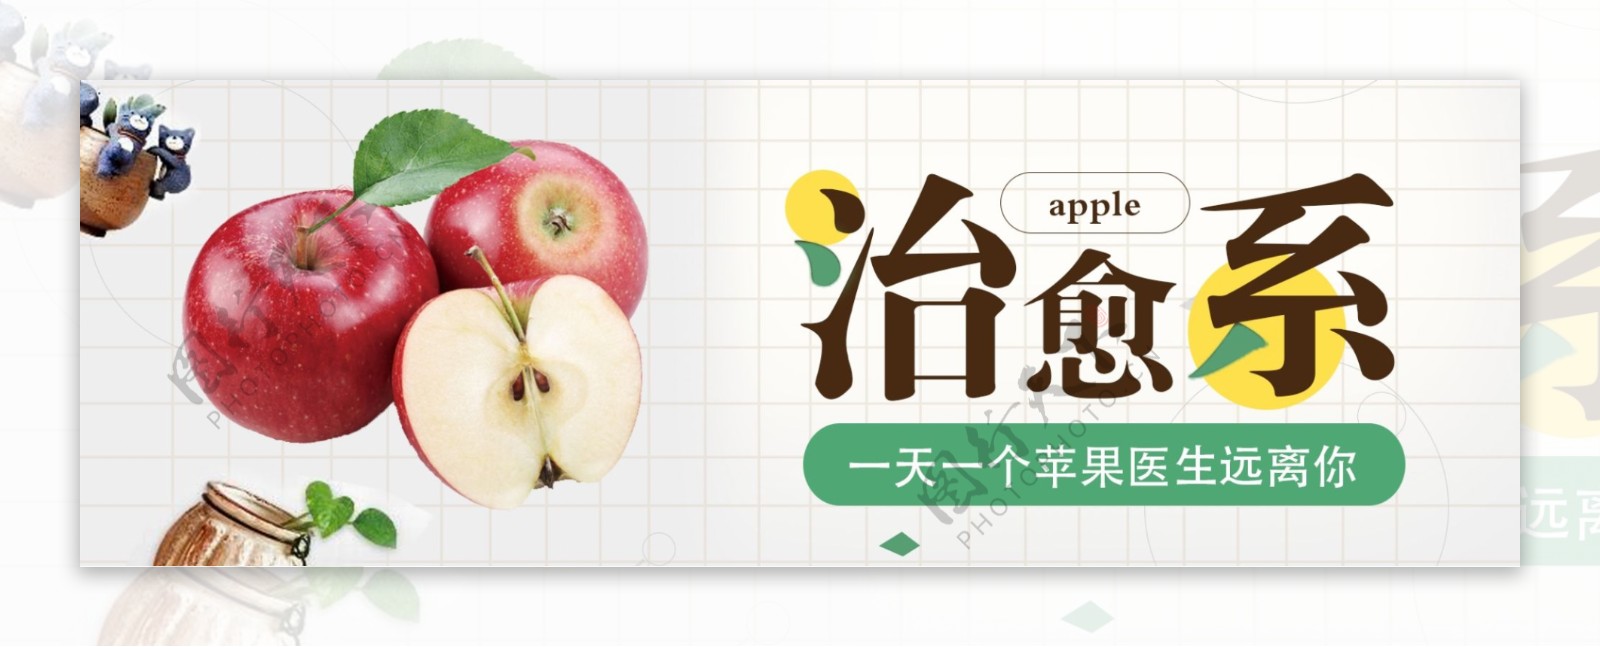 电商淘宝苹果水果类首页海报模板